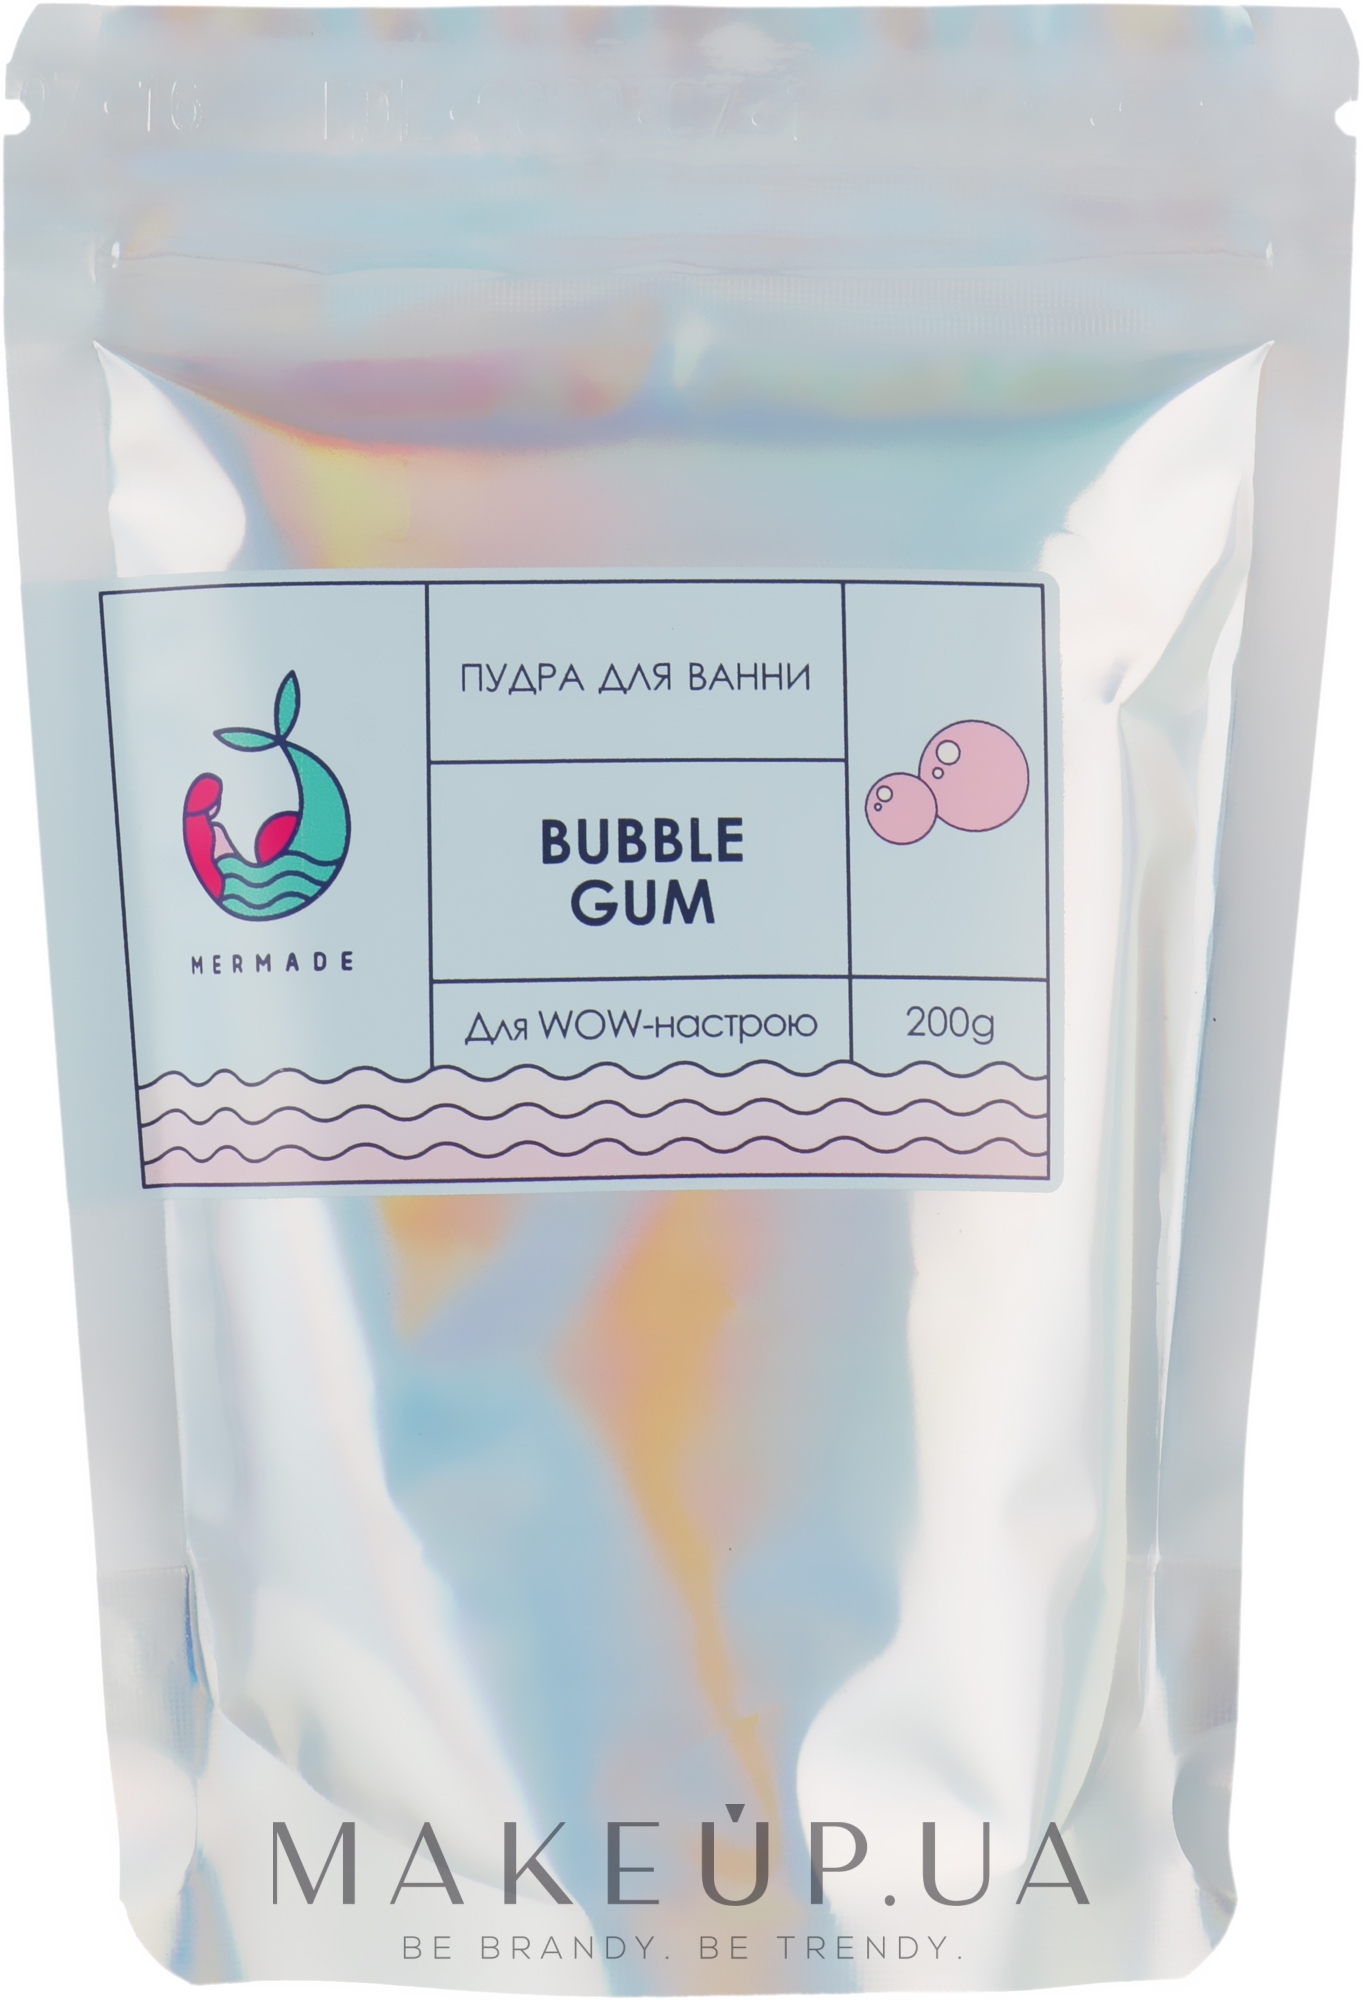 Пудра для ванны - Mermade Bubble Gum  — фото 200g